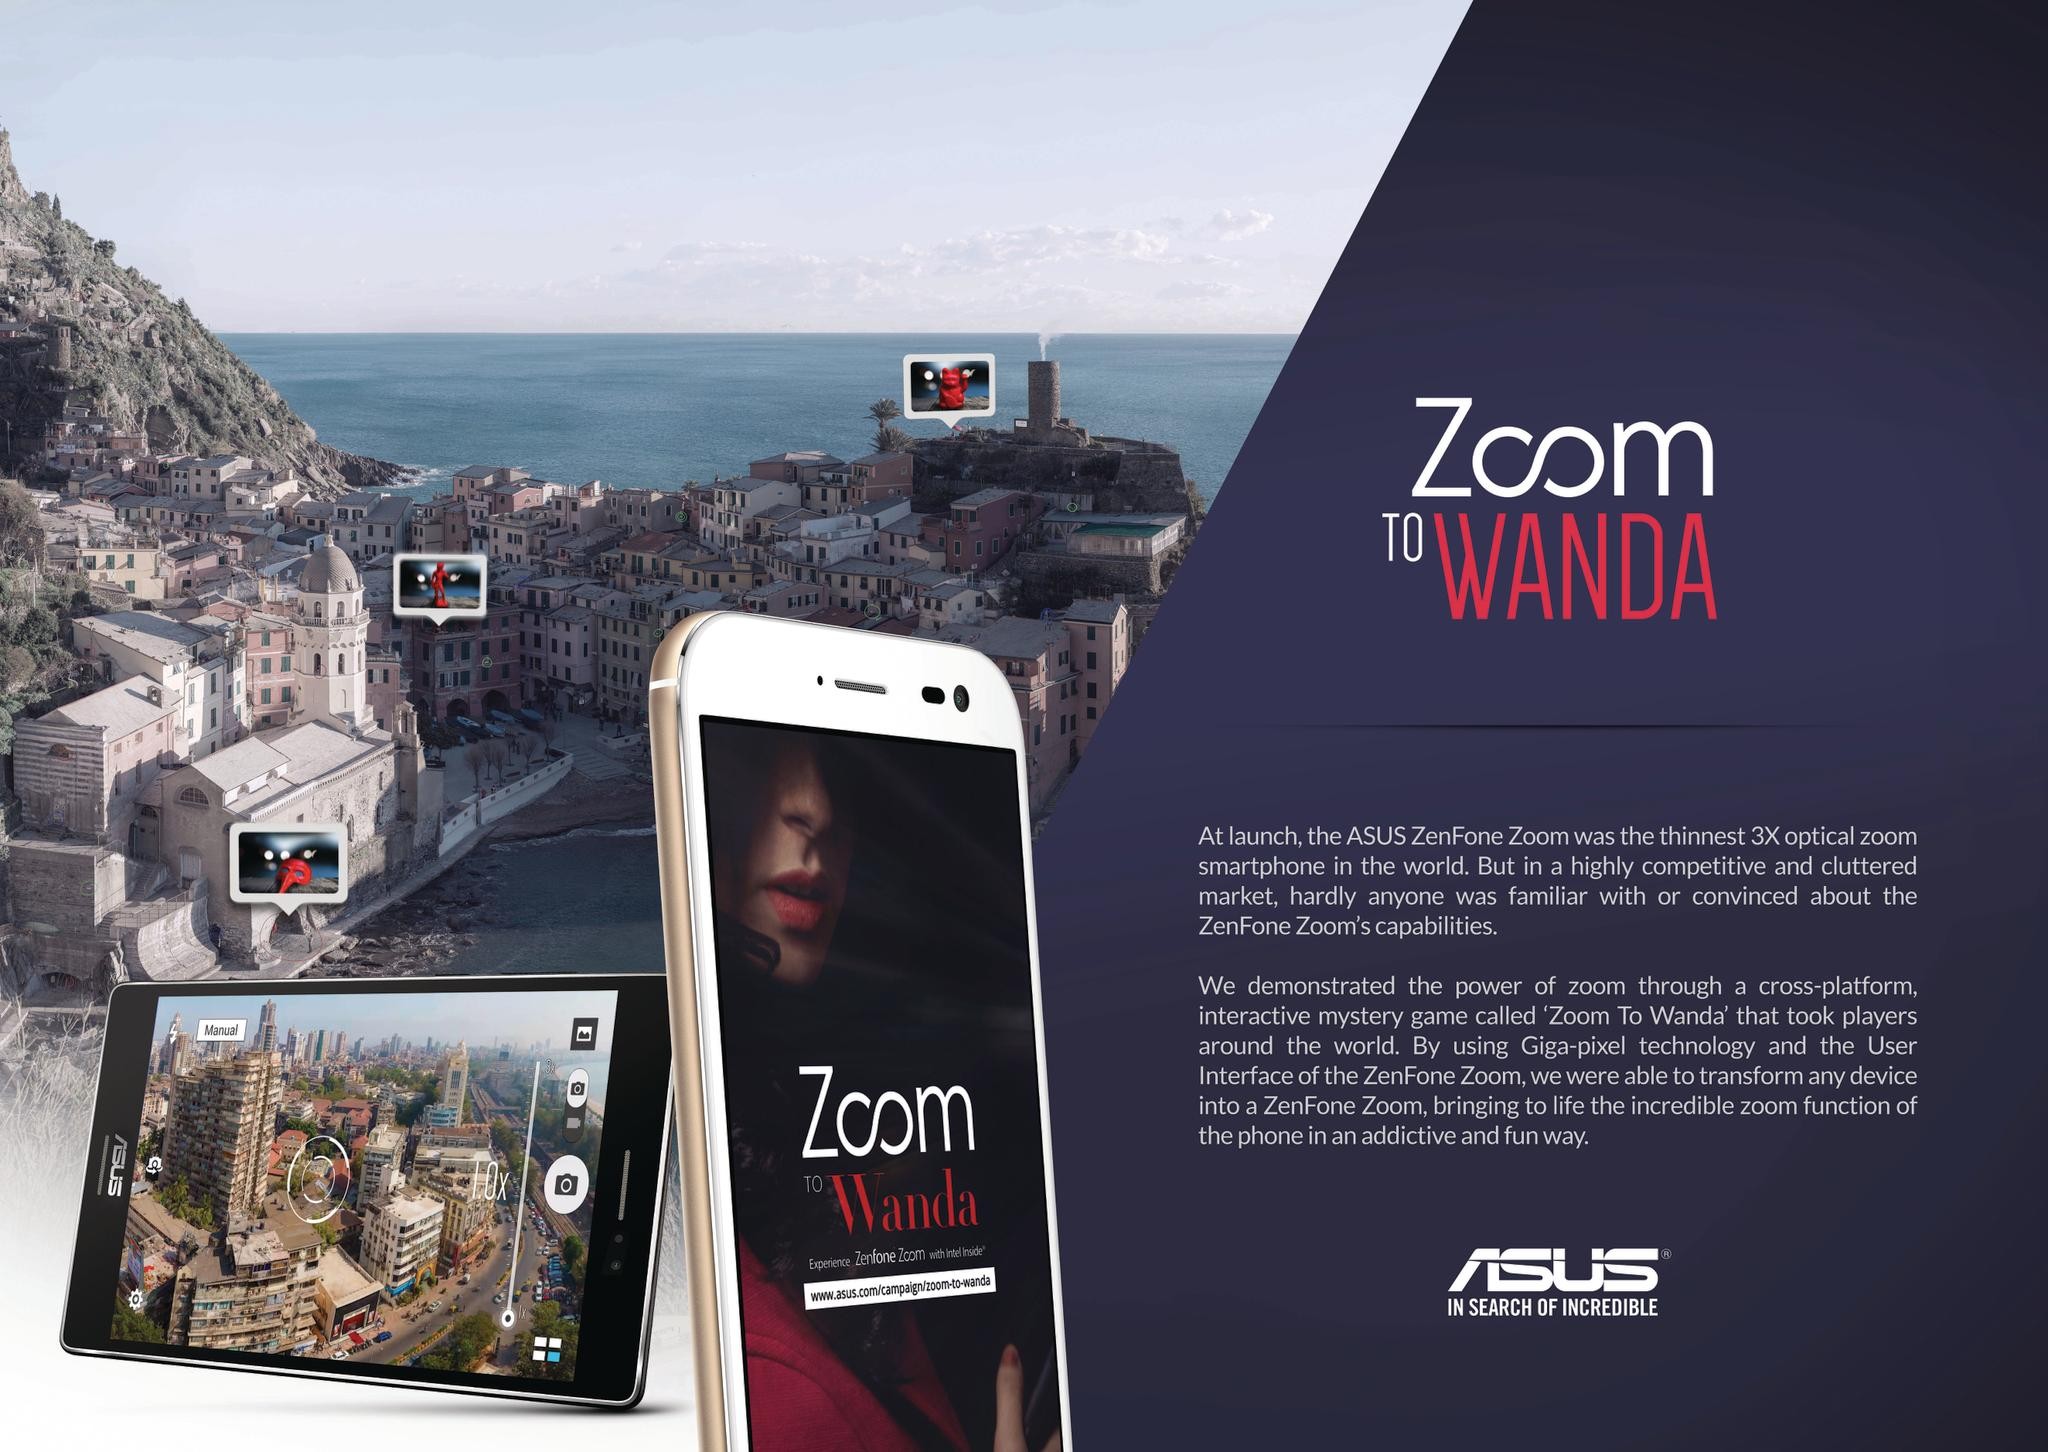 ASUS ZenFone Zoom to Wanda